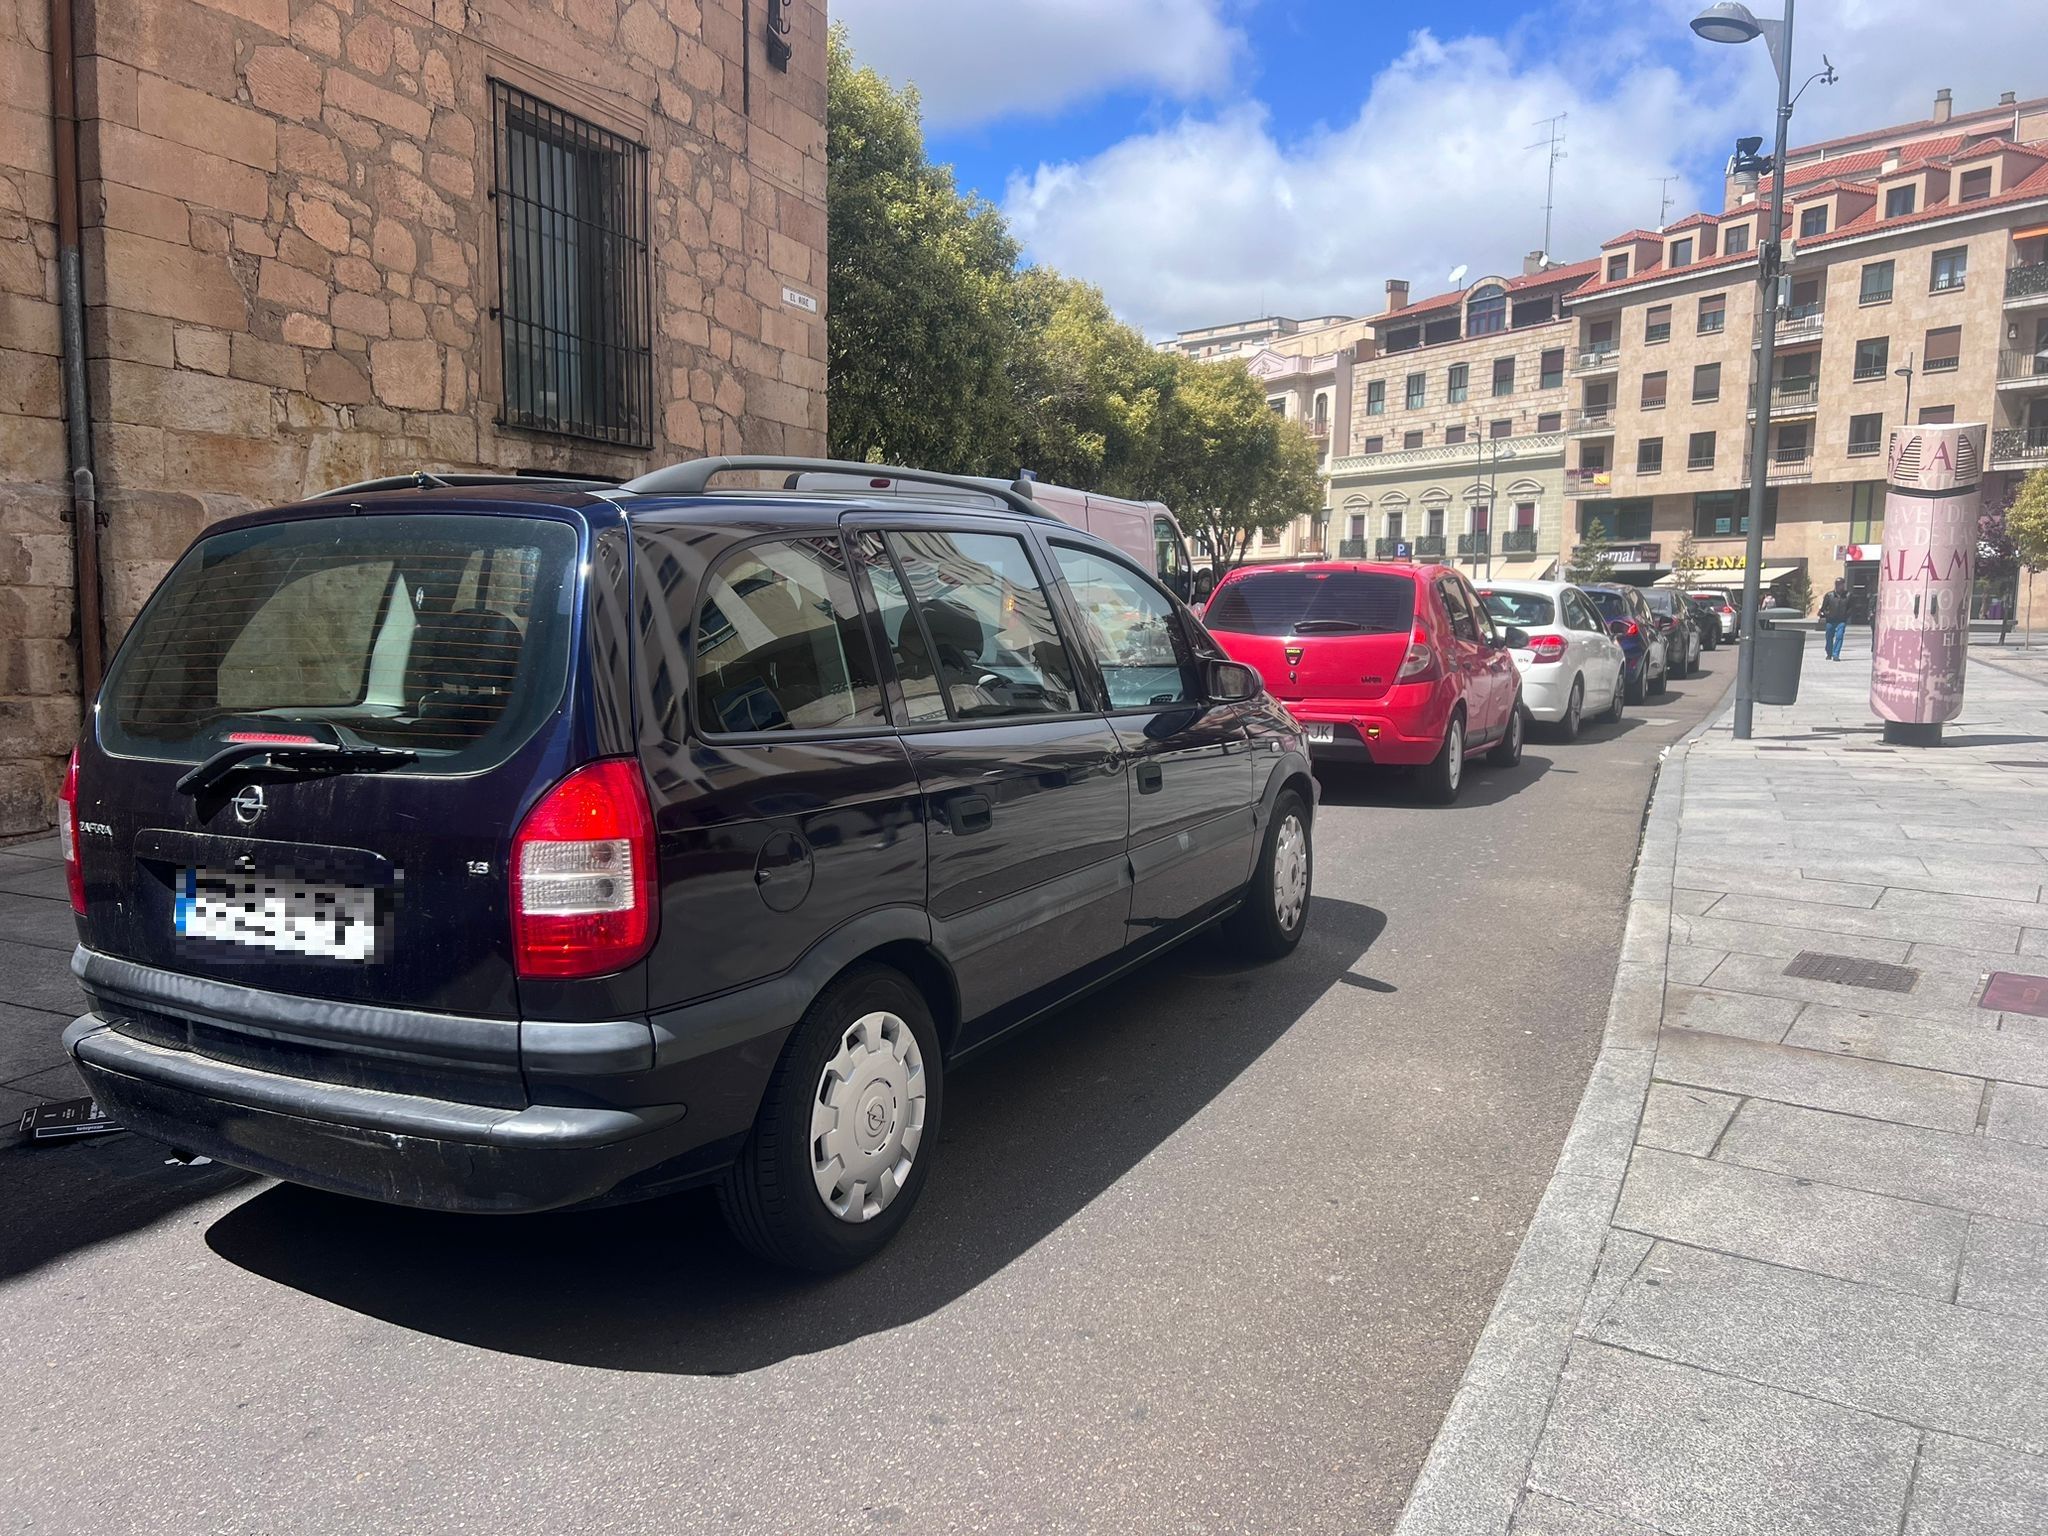 Largas colas en los aparcamientos de Salamanca capital por el puente de mayo. Fotos S24H 